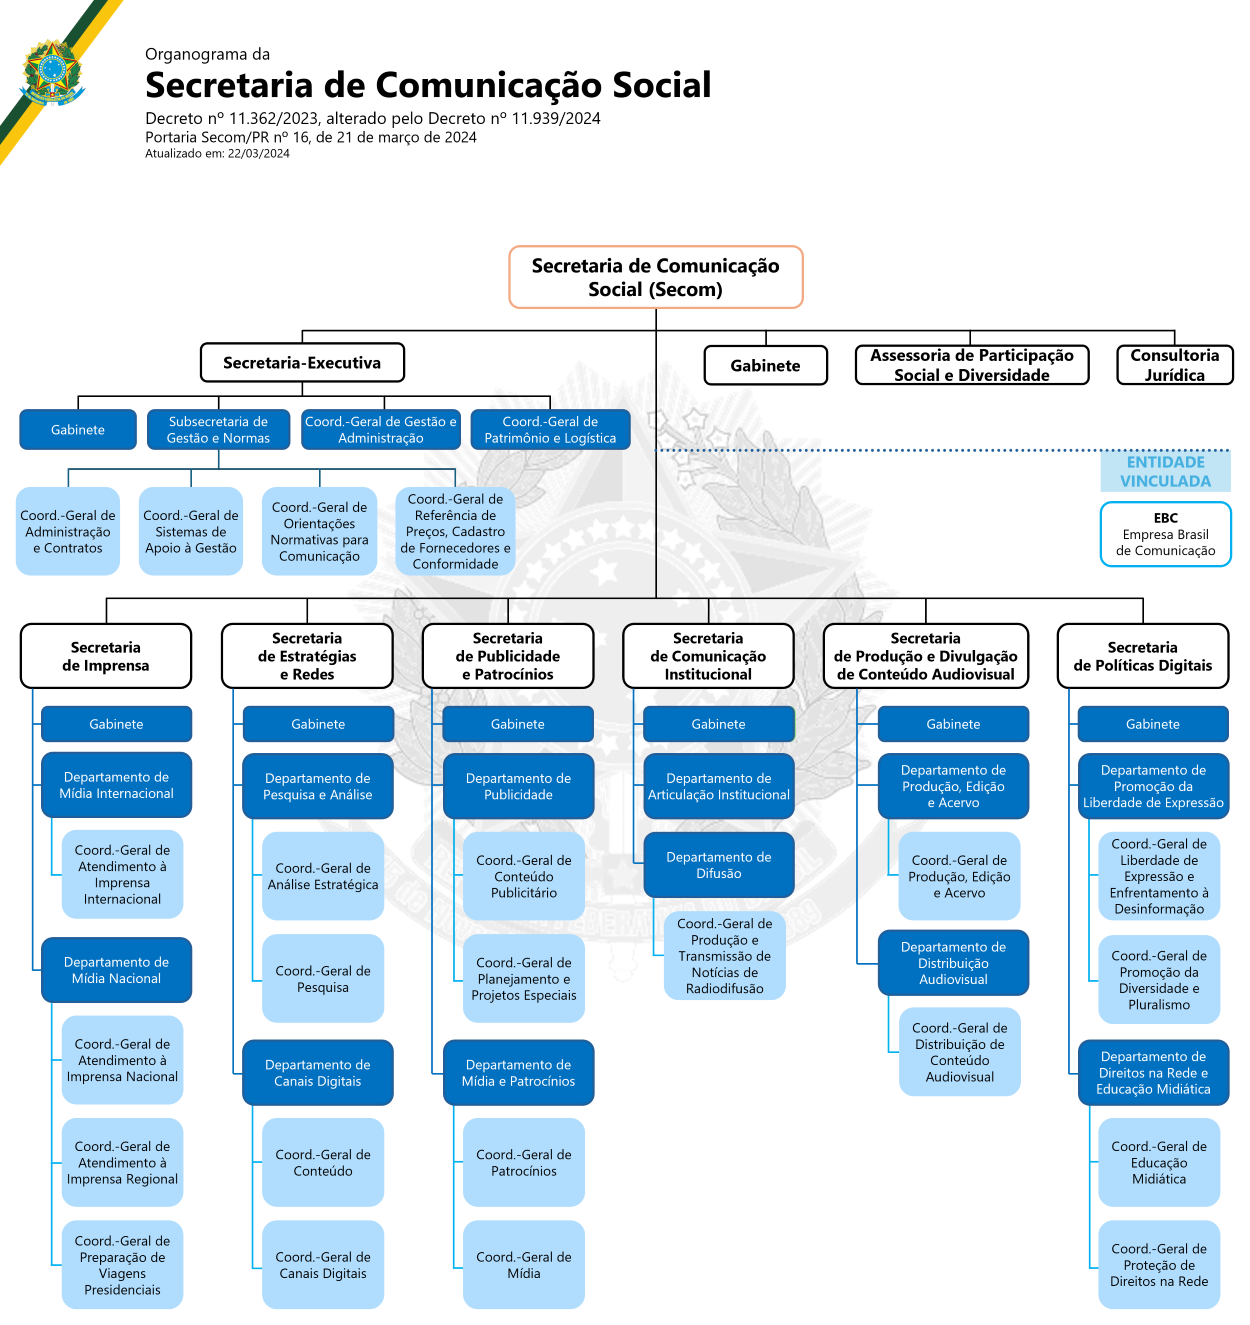 Estrutura regimental da Secretaria de Comunicação Social